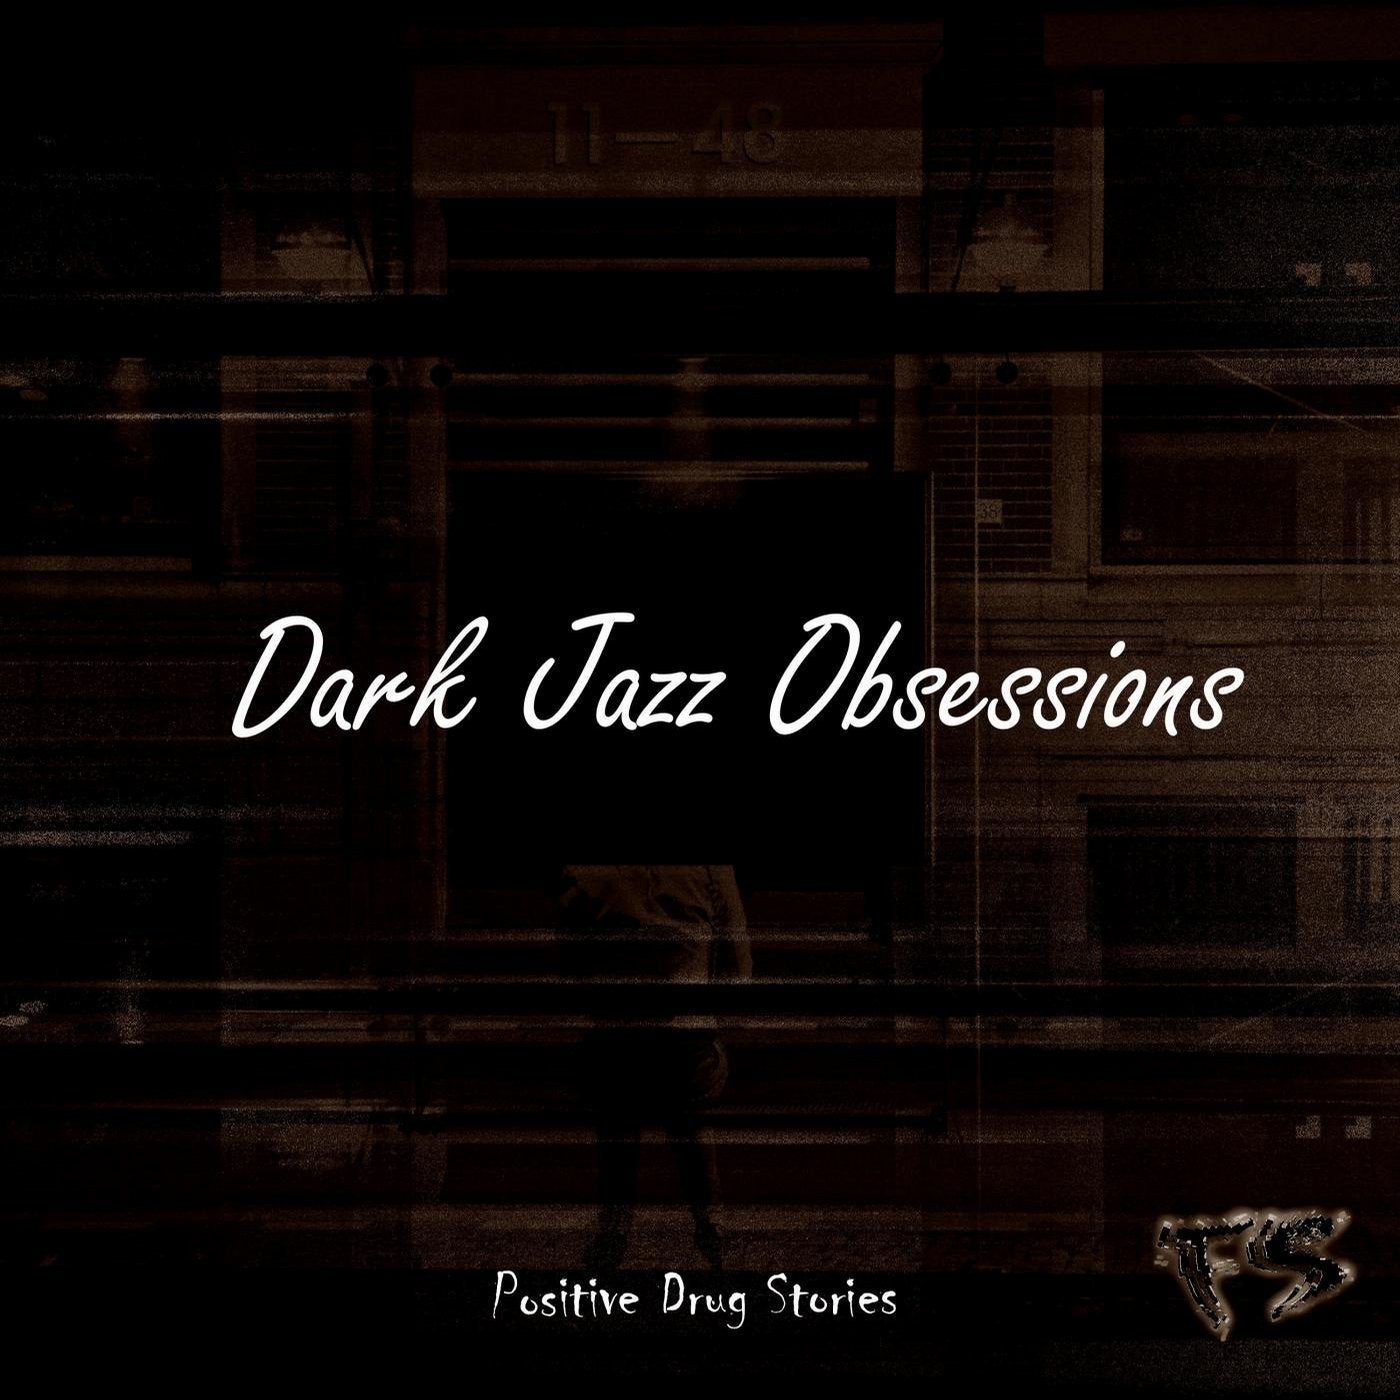 Dark Jazz Obsessions